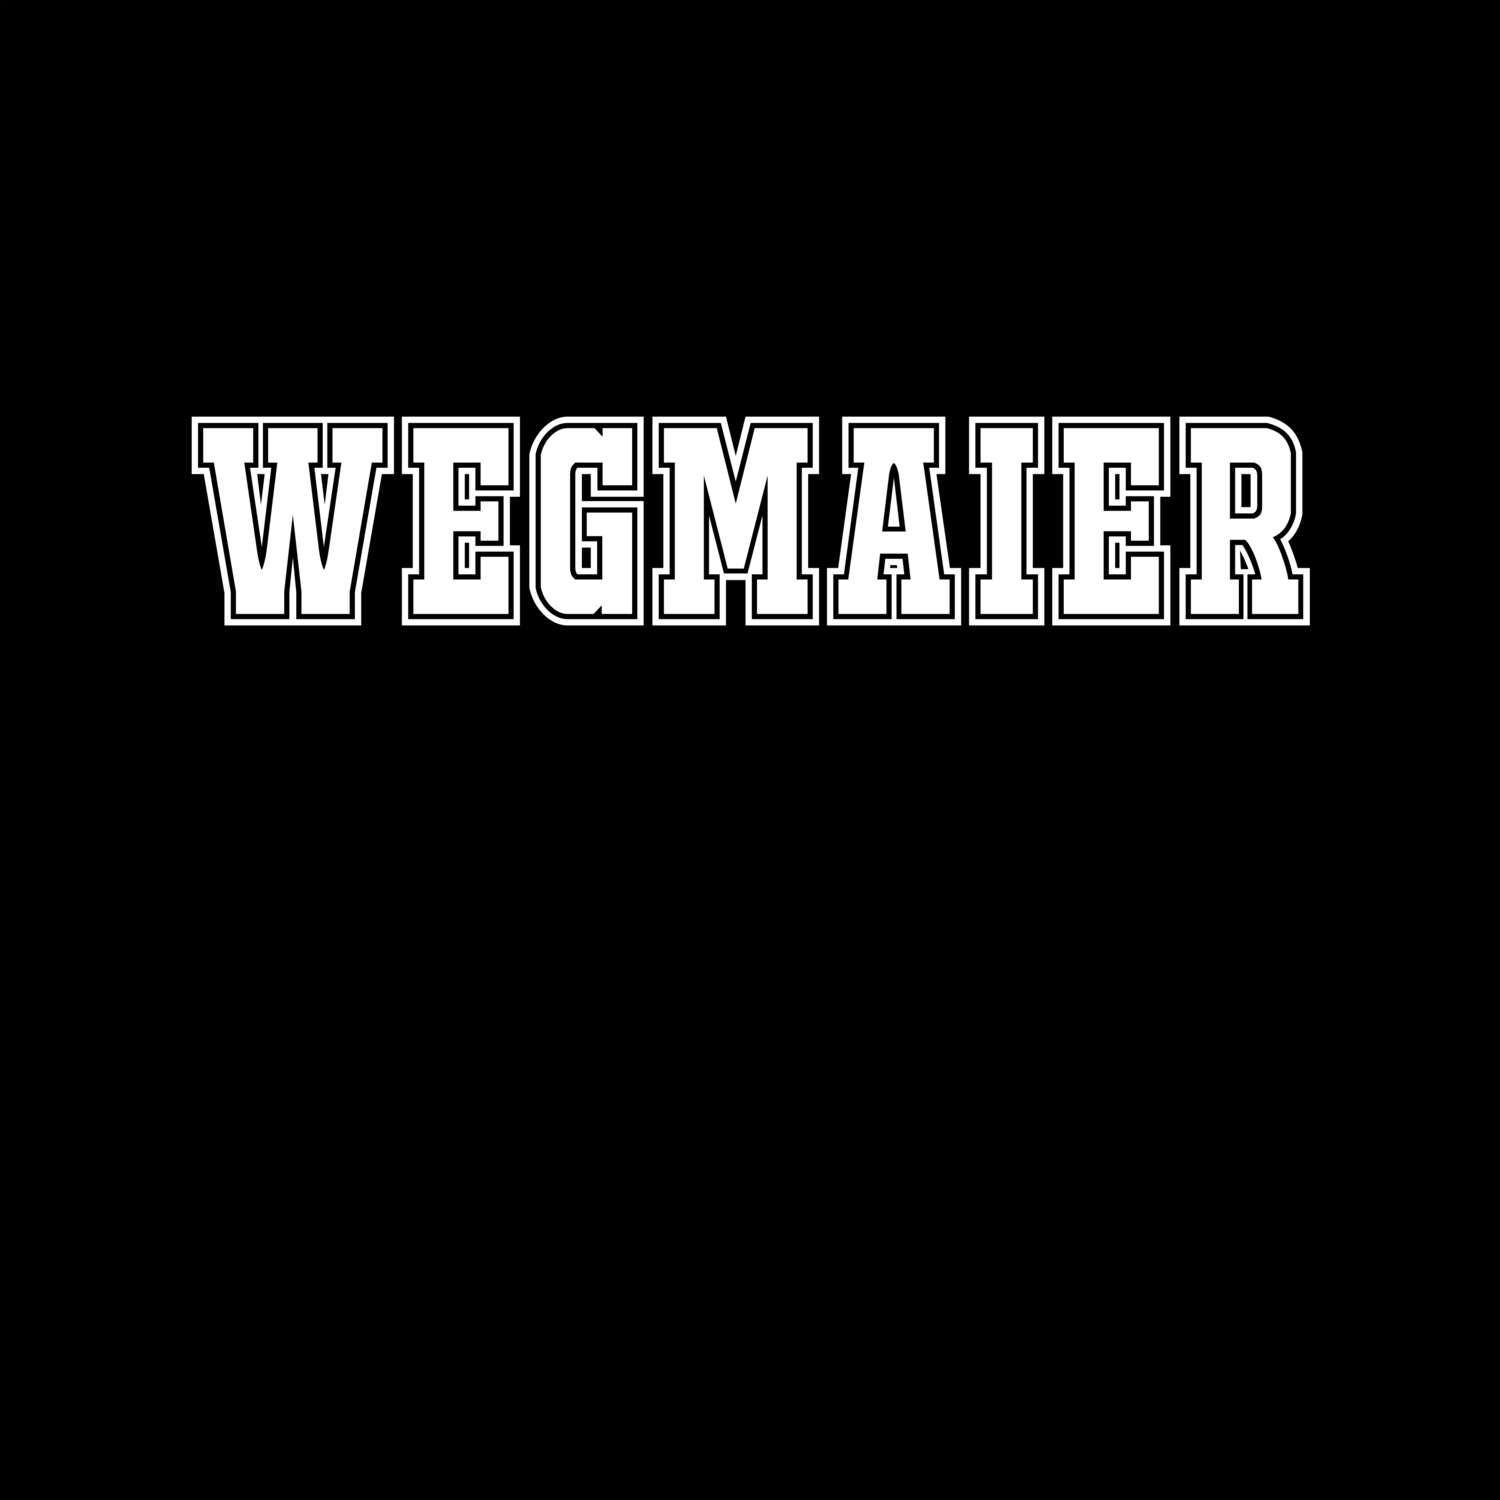 Wegmaier T-Shirt »Classic«